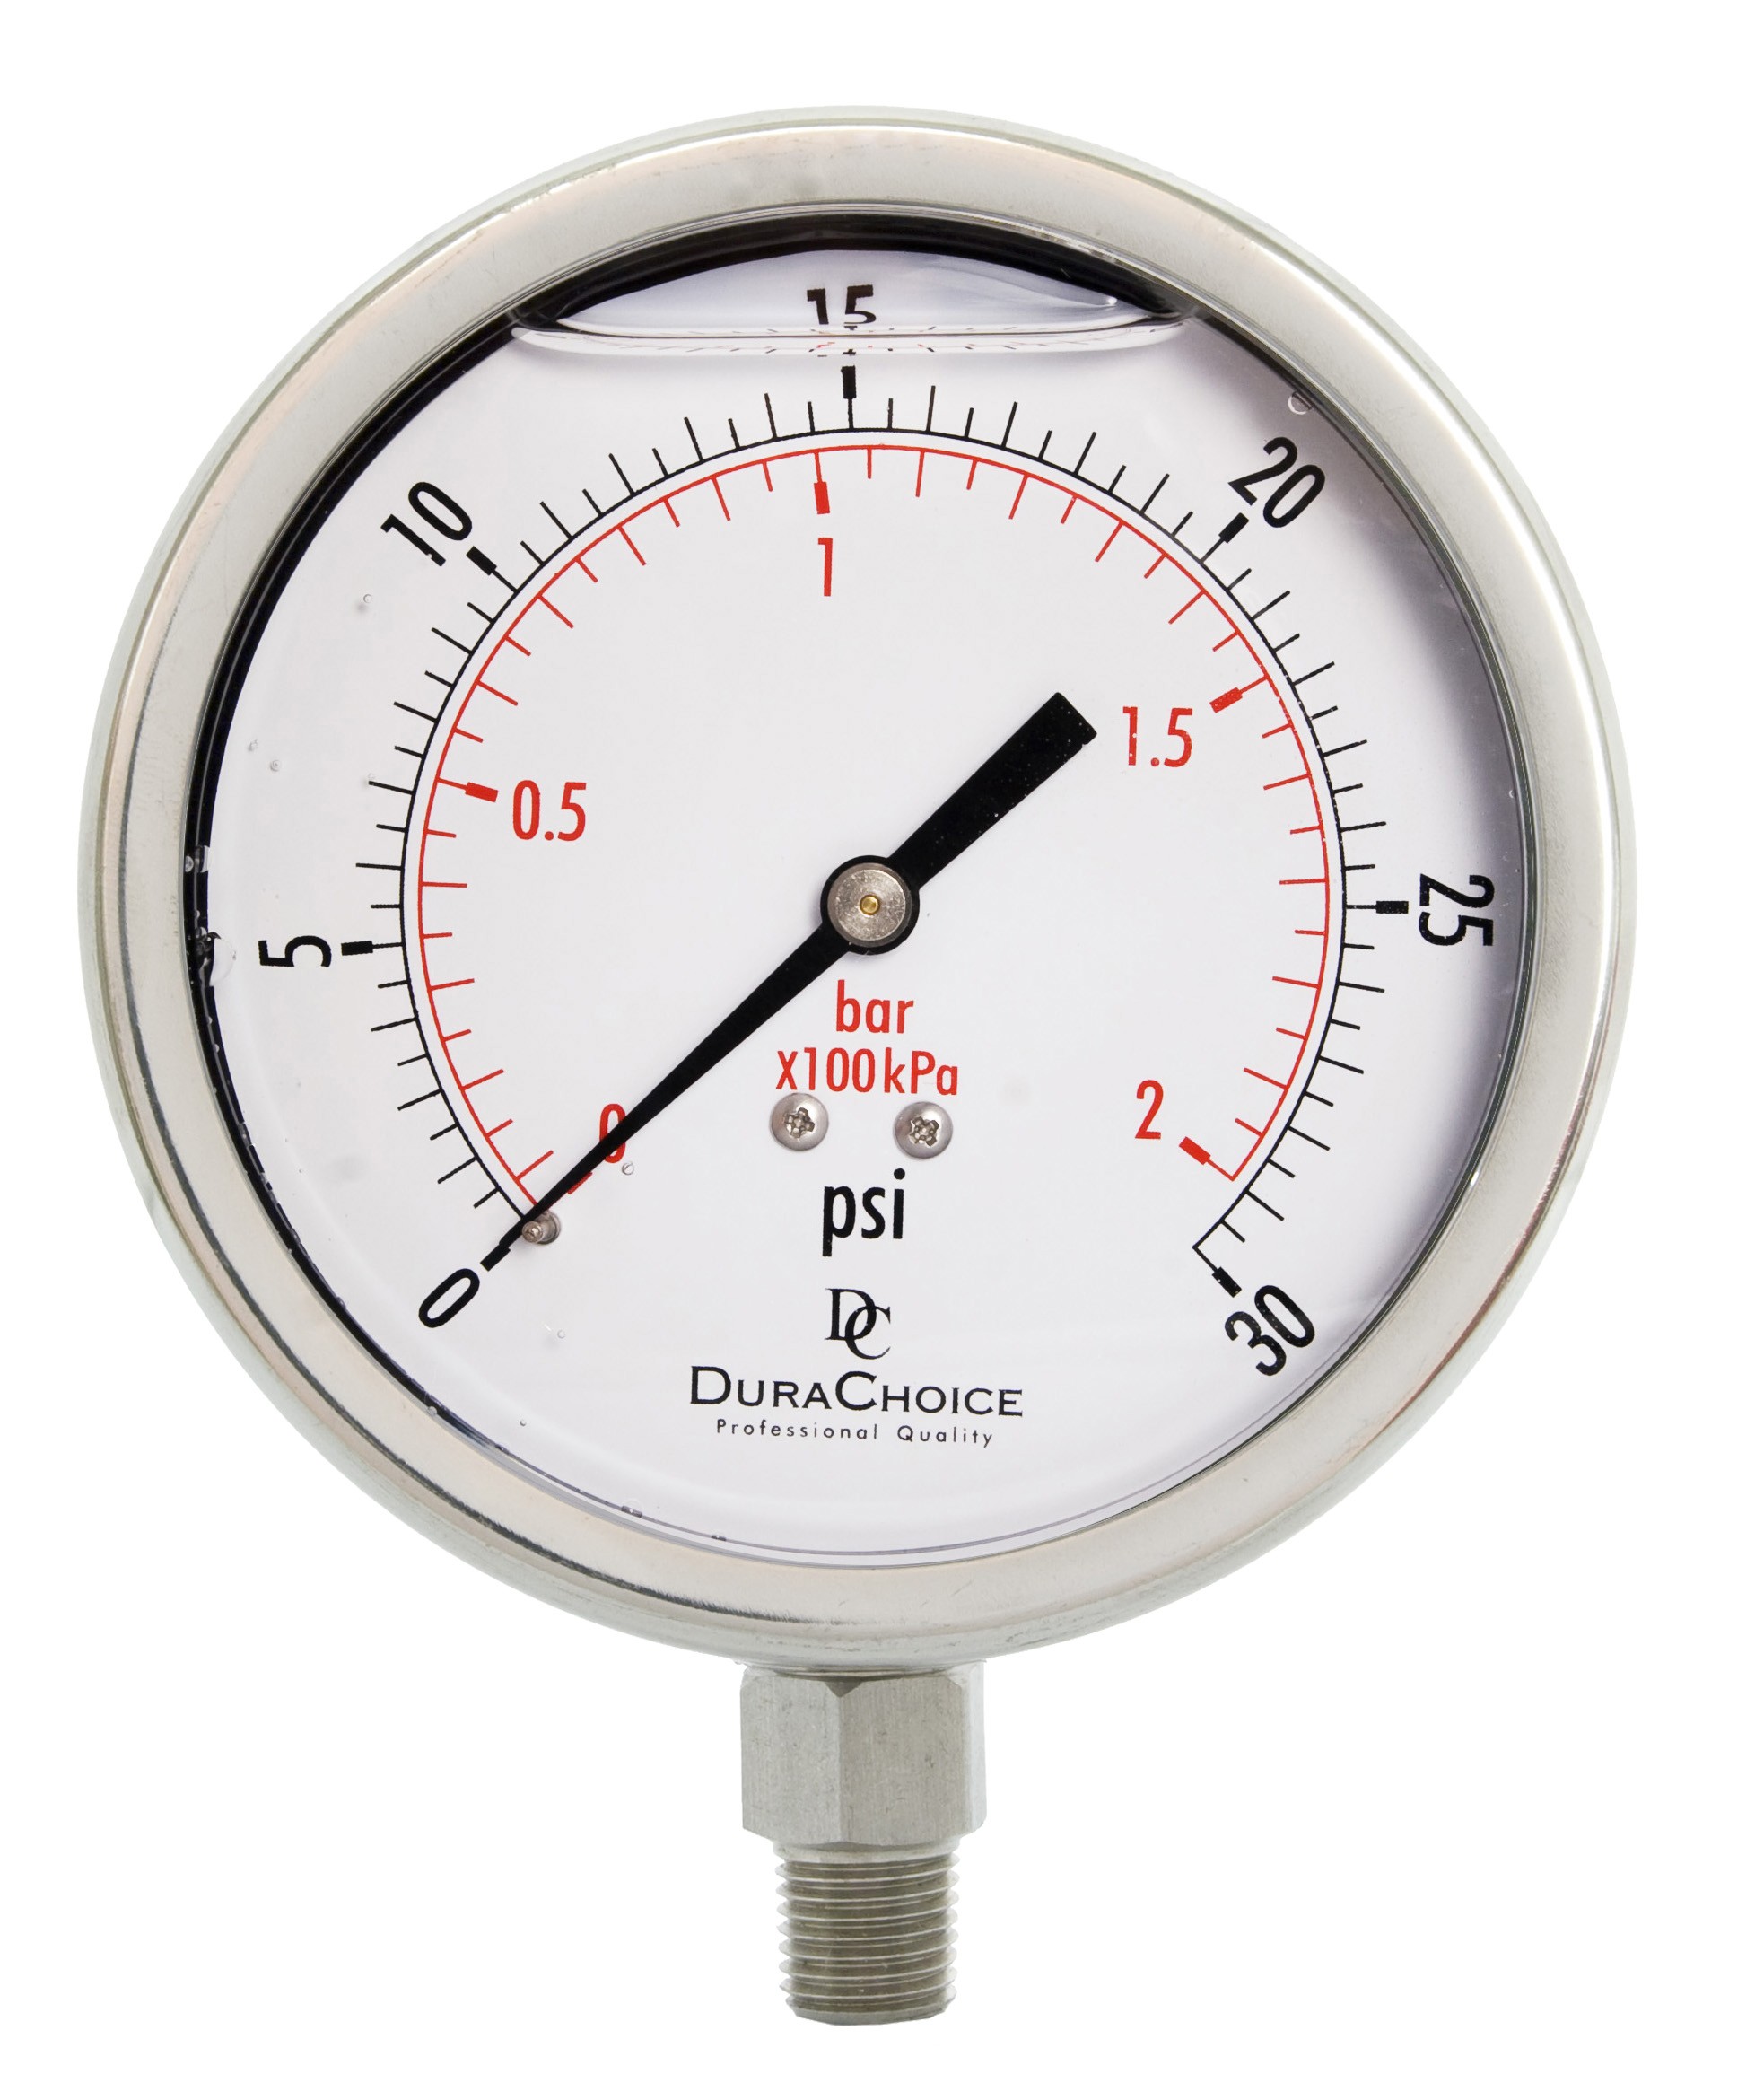 liquid pressure meter